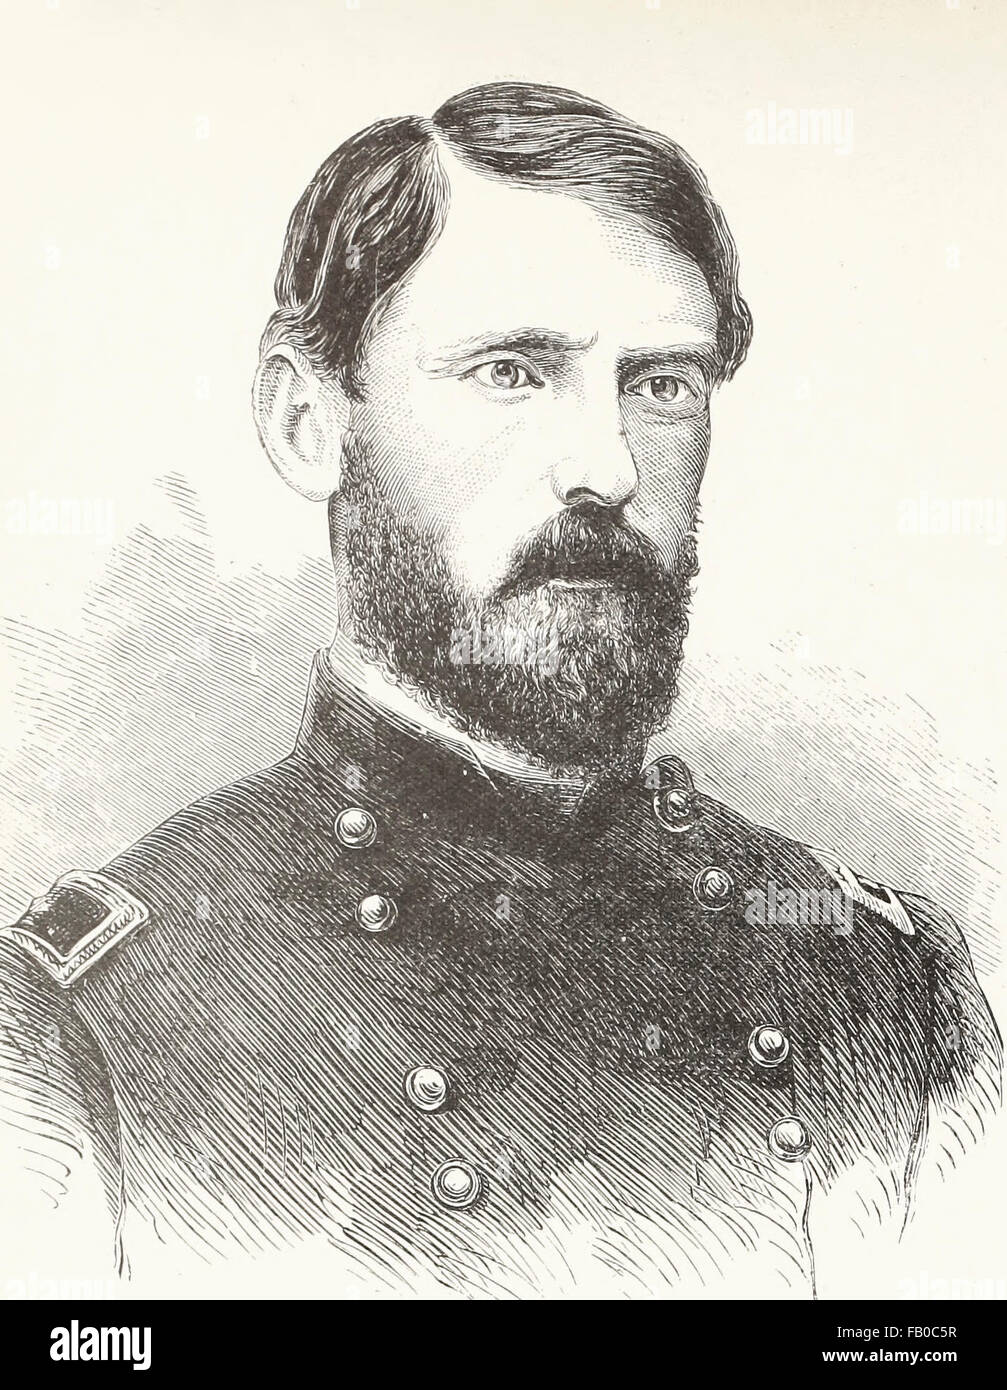 Allgemein John Fulton Reynolds war ein Berufsoffizier der United States Army und General im amerikanischen Bürgerkrieg. Eines der Unionsarmee respektiert Kommandeure, er spielte eine Schlüsselrolle in der Armee des Potomac an der Schlacht von Gettysburg zu begehen und zu Beginn der Schlacht getötet wurde. USA Bürgerkrieg Stockfoto